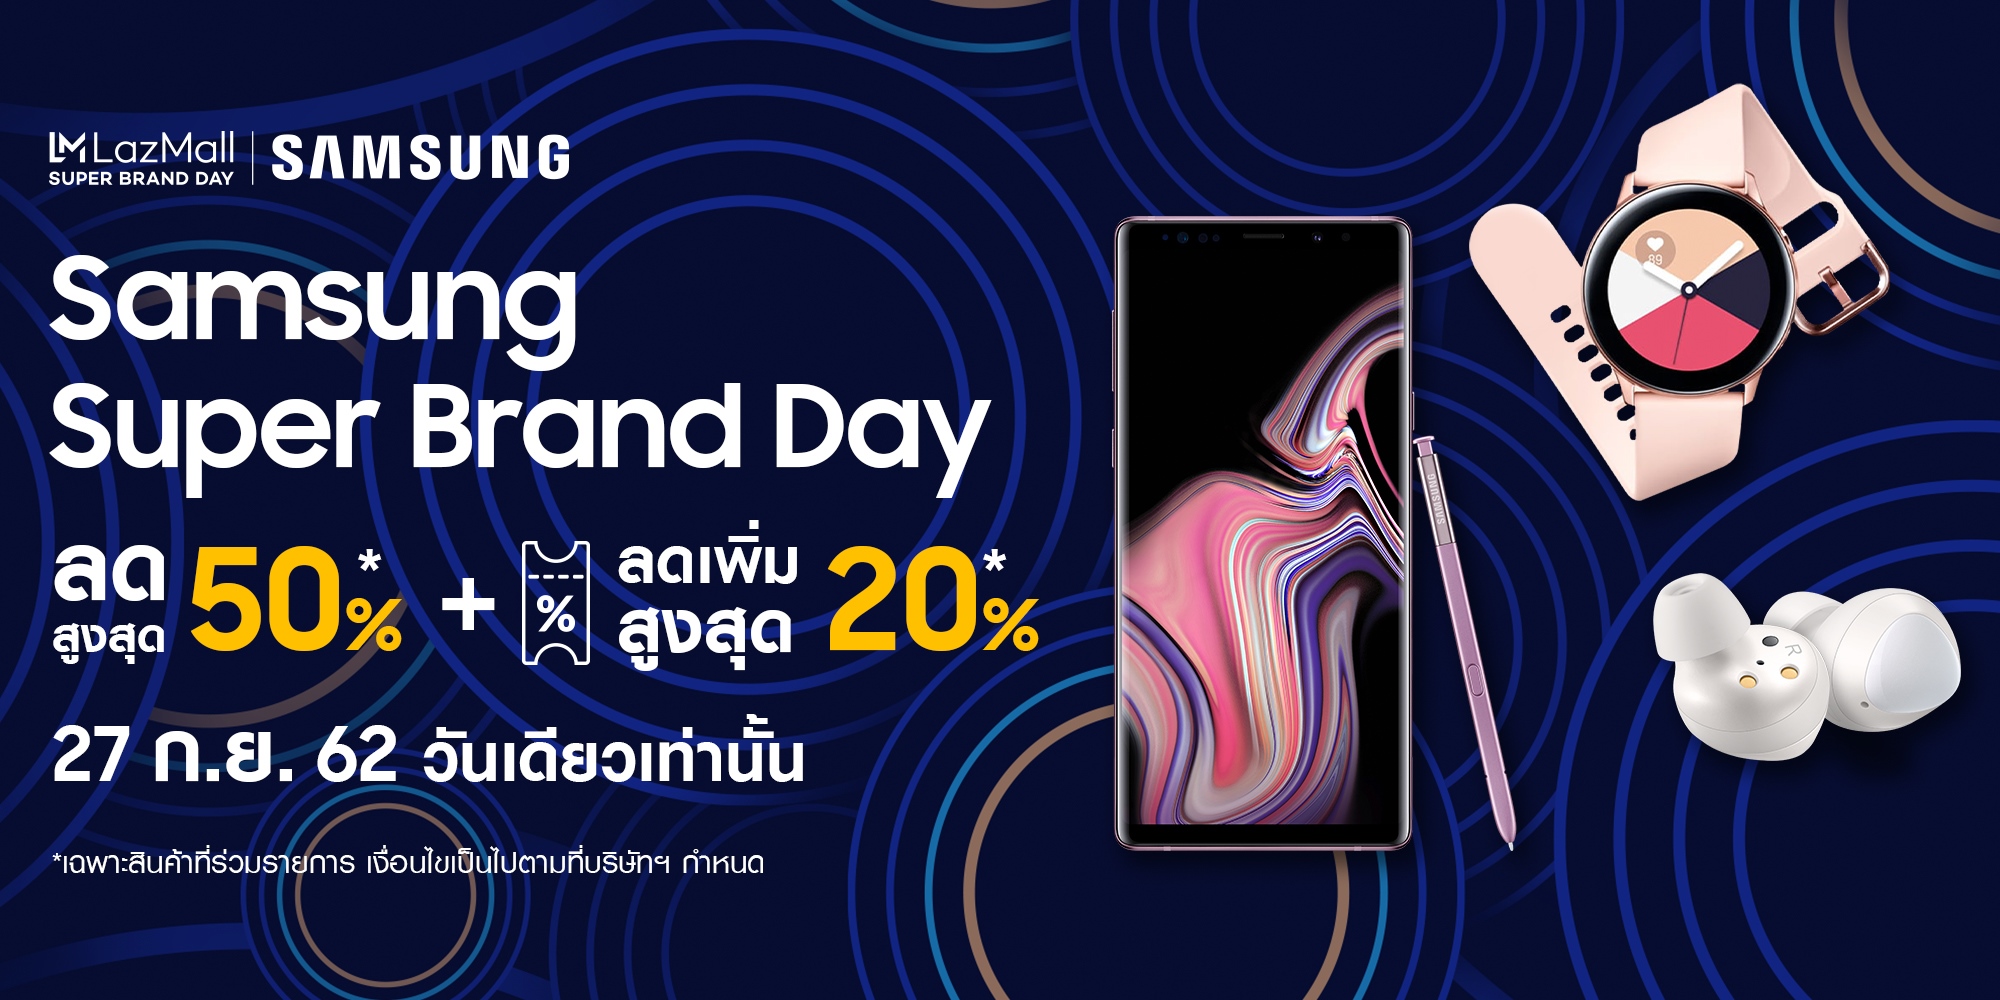 Samsung Super Brand Day 2019